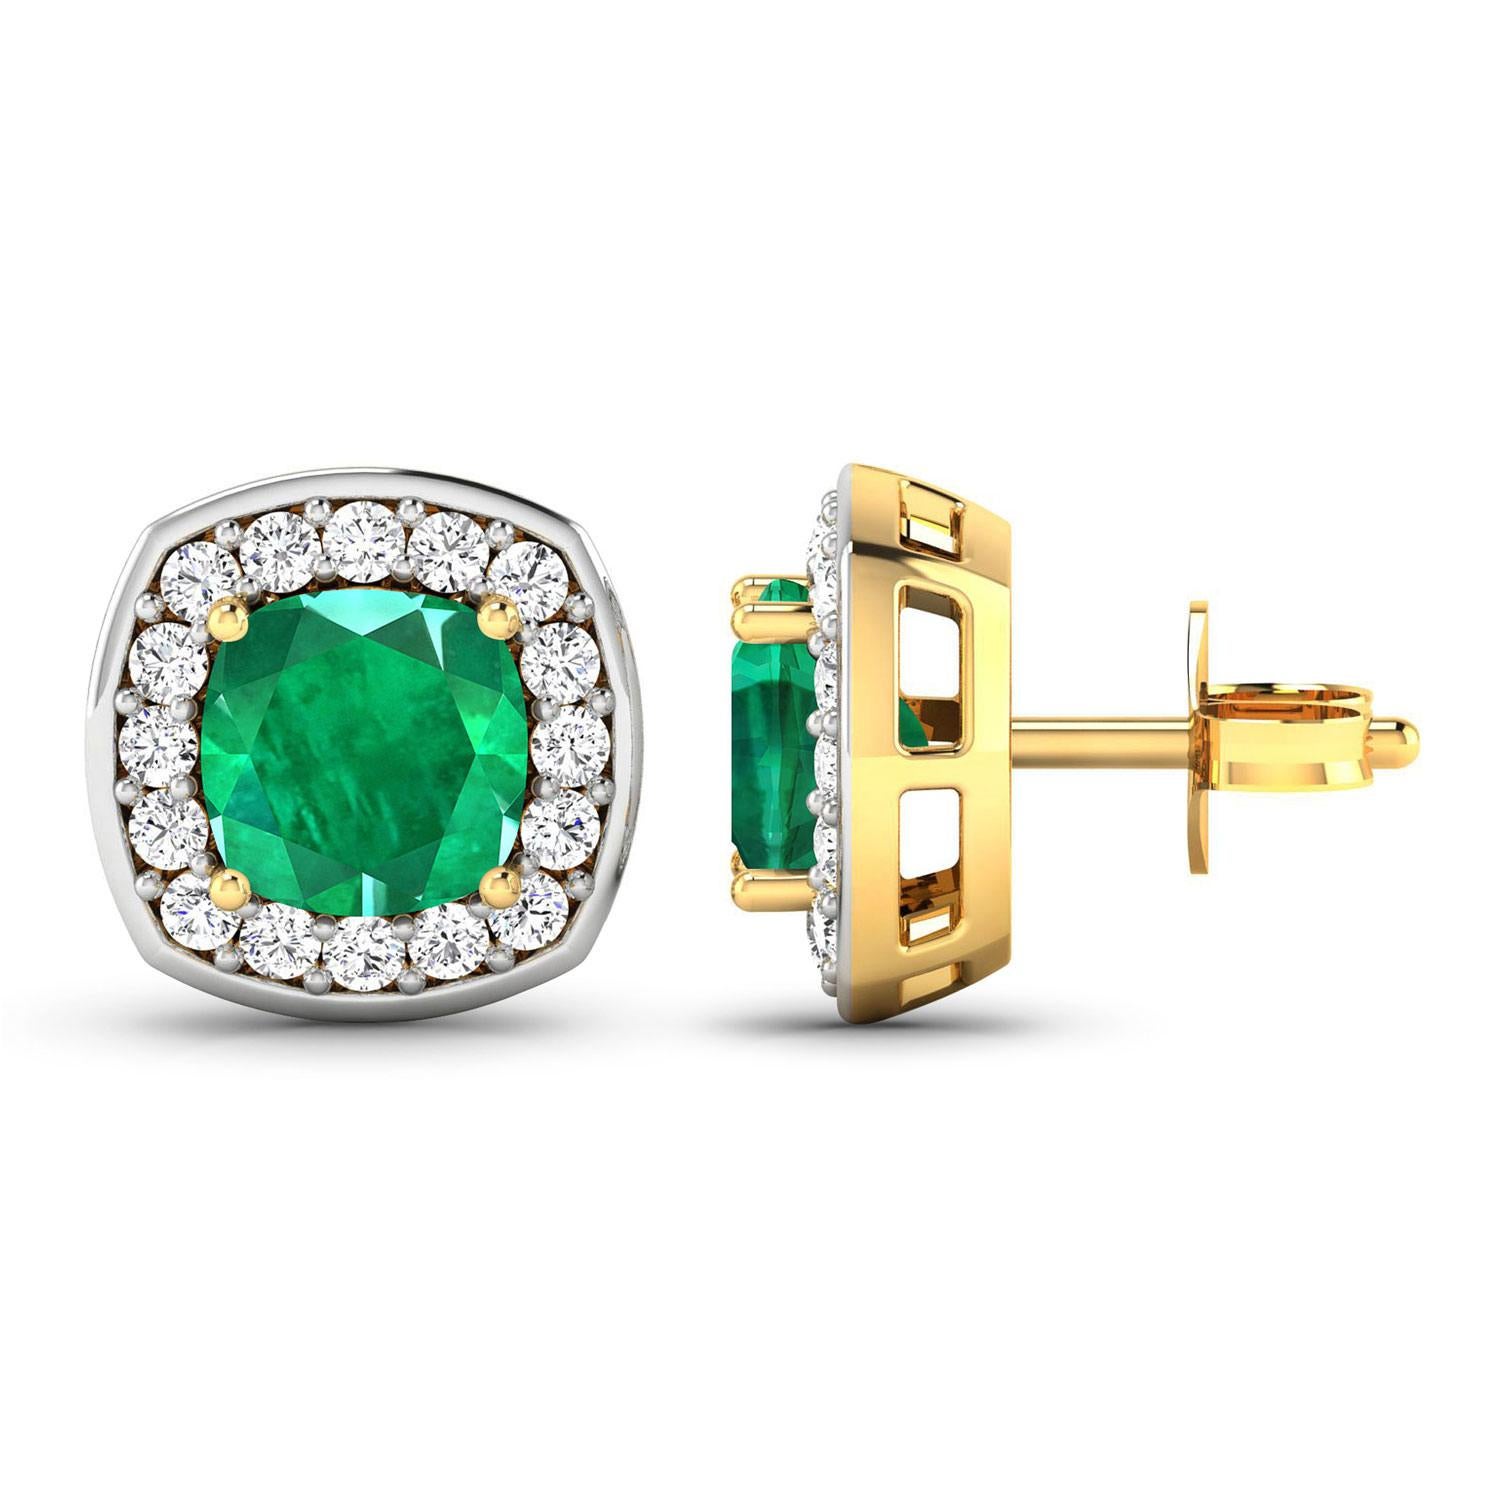 Cushion Cut Natural Zambian Emerald & Diamond Earrings Total 2.25 Carats 14k Yellow Gold